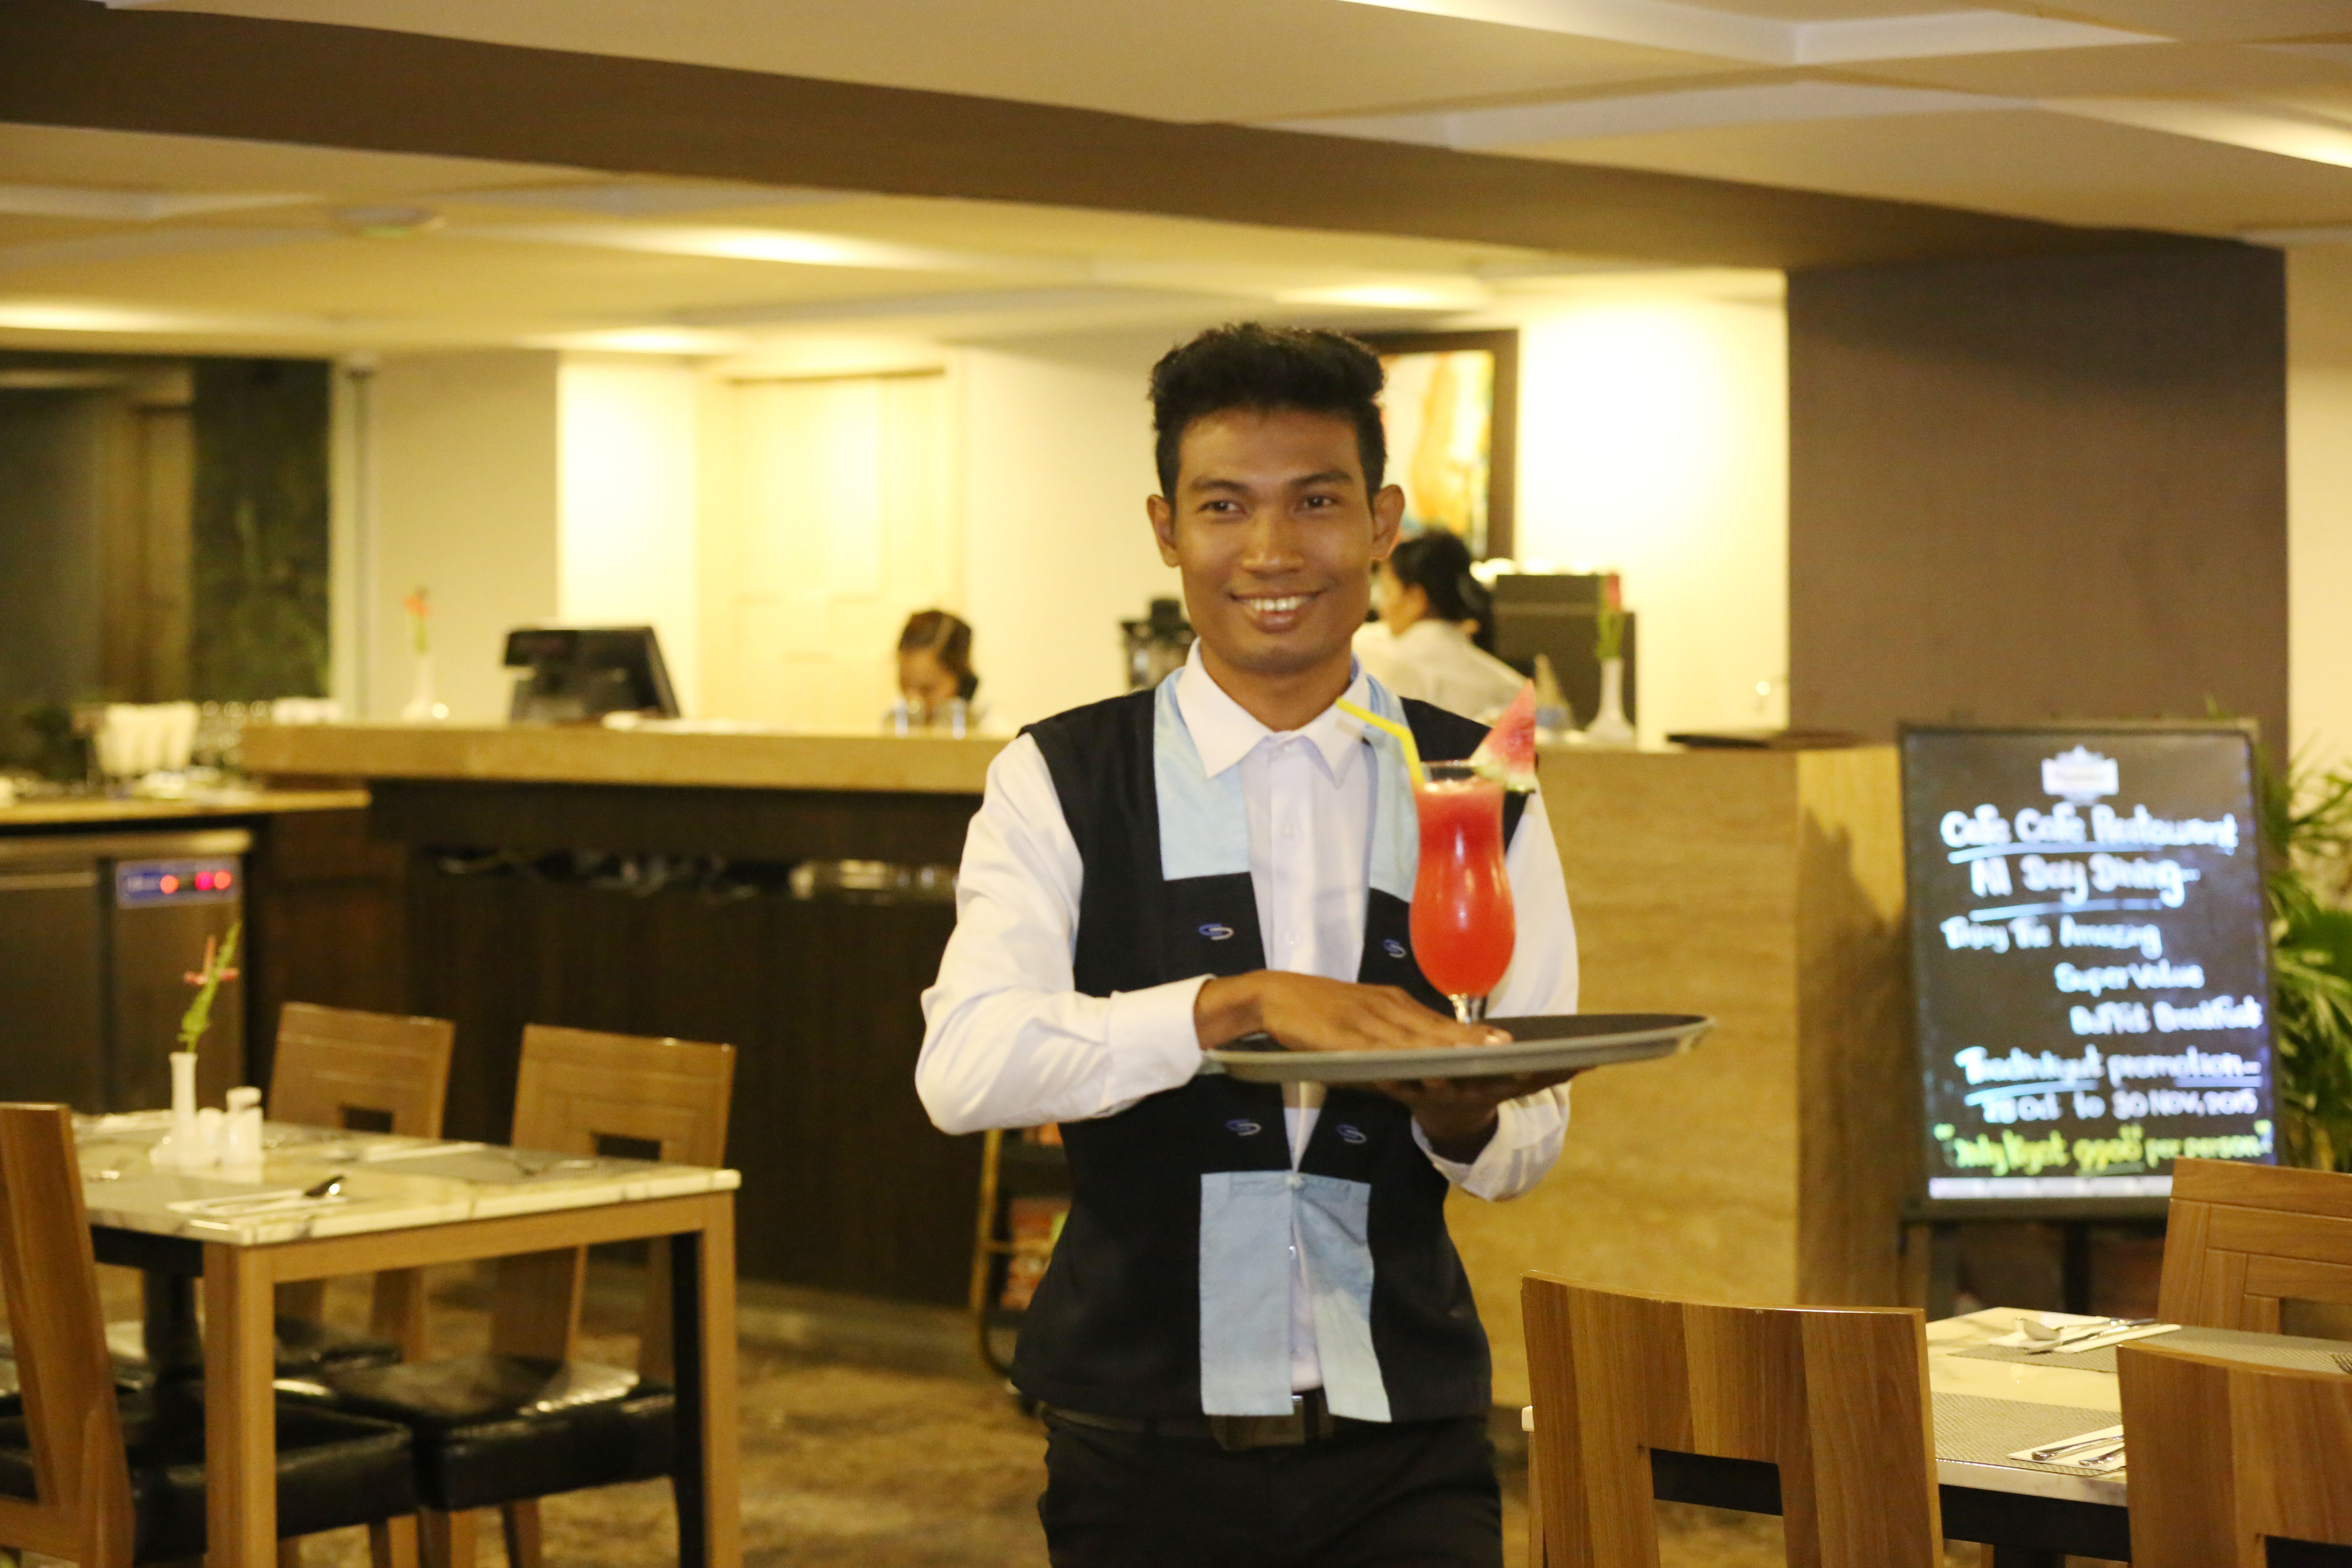 Un giovane cameriere attraversa sorridendo il ristorante, tenendo in mano un vassoio con un cocktail.